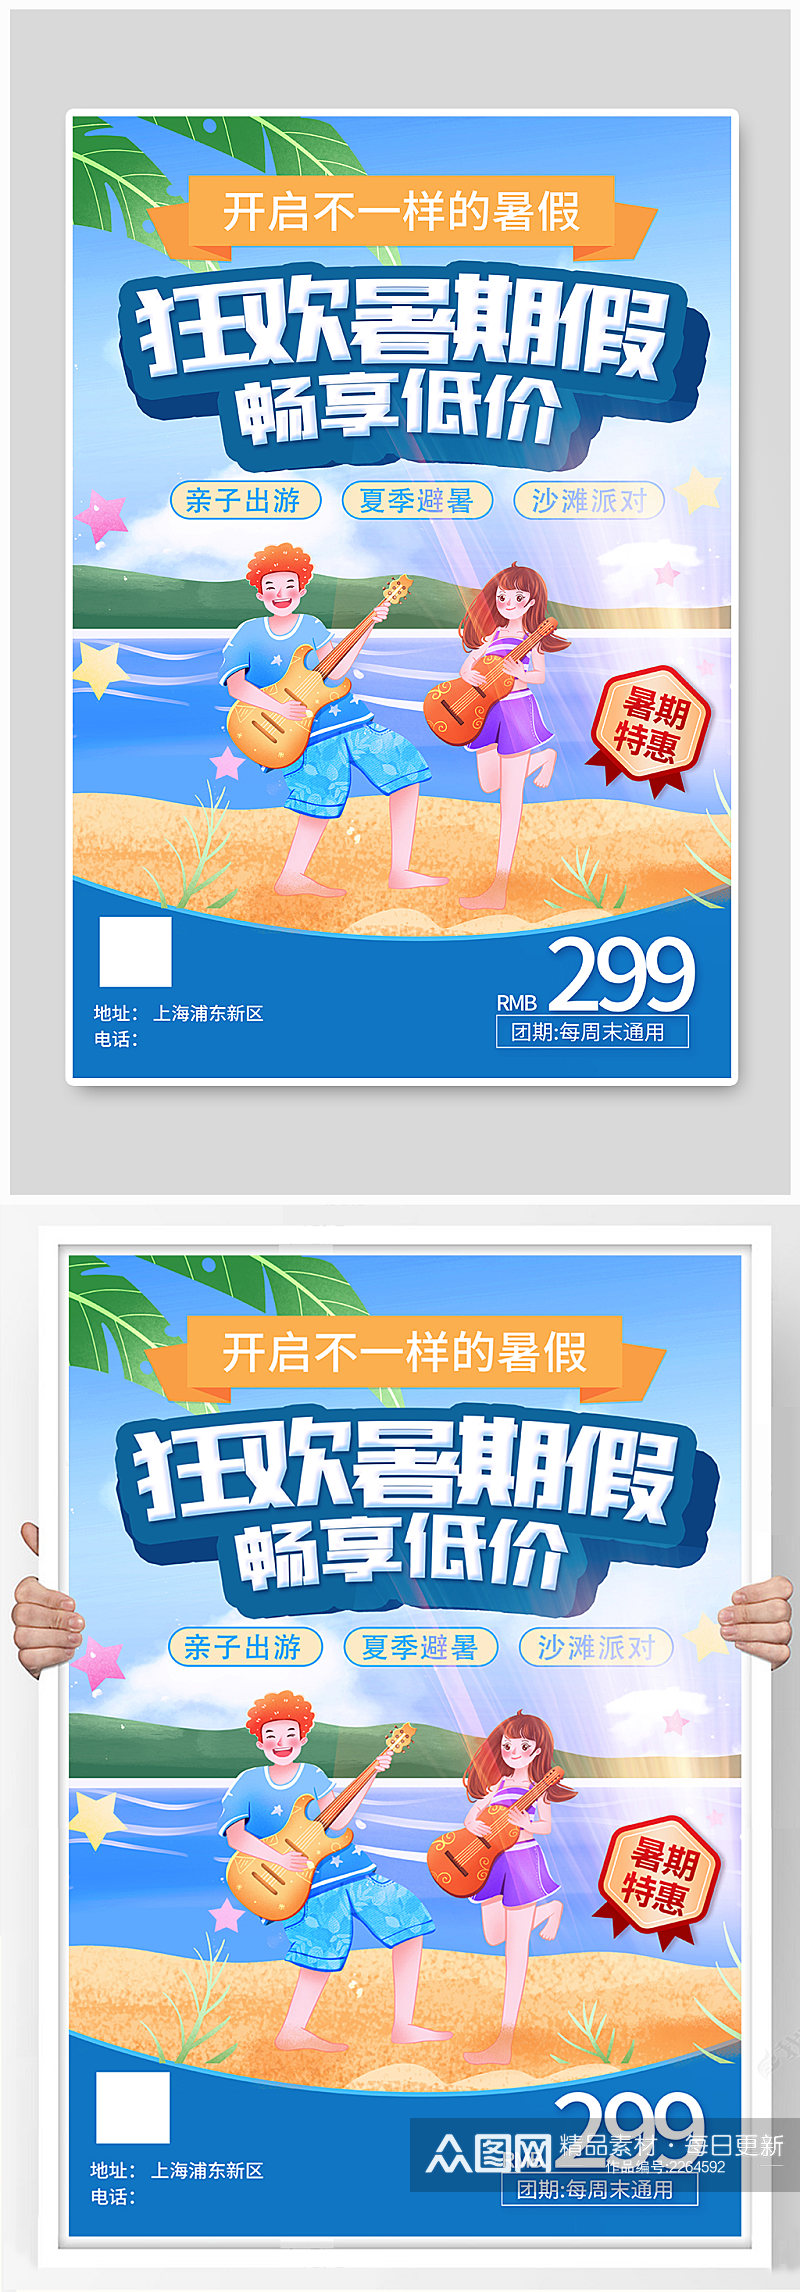 暑期海边夏令营促销宣传海报素材